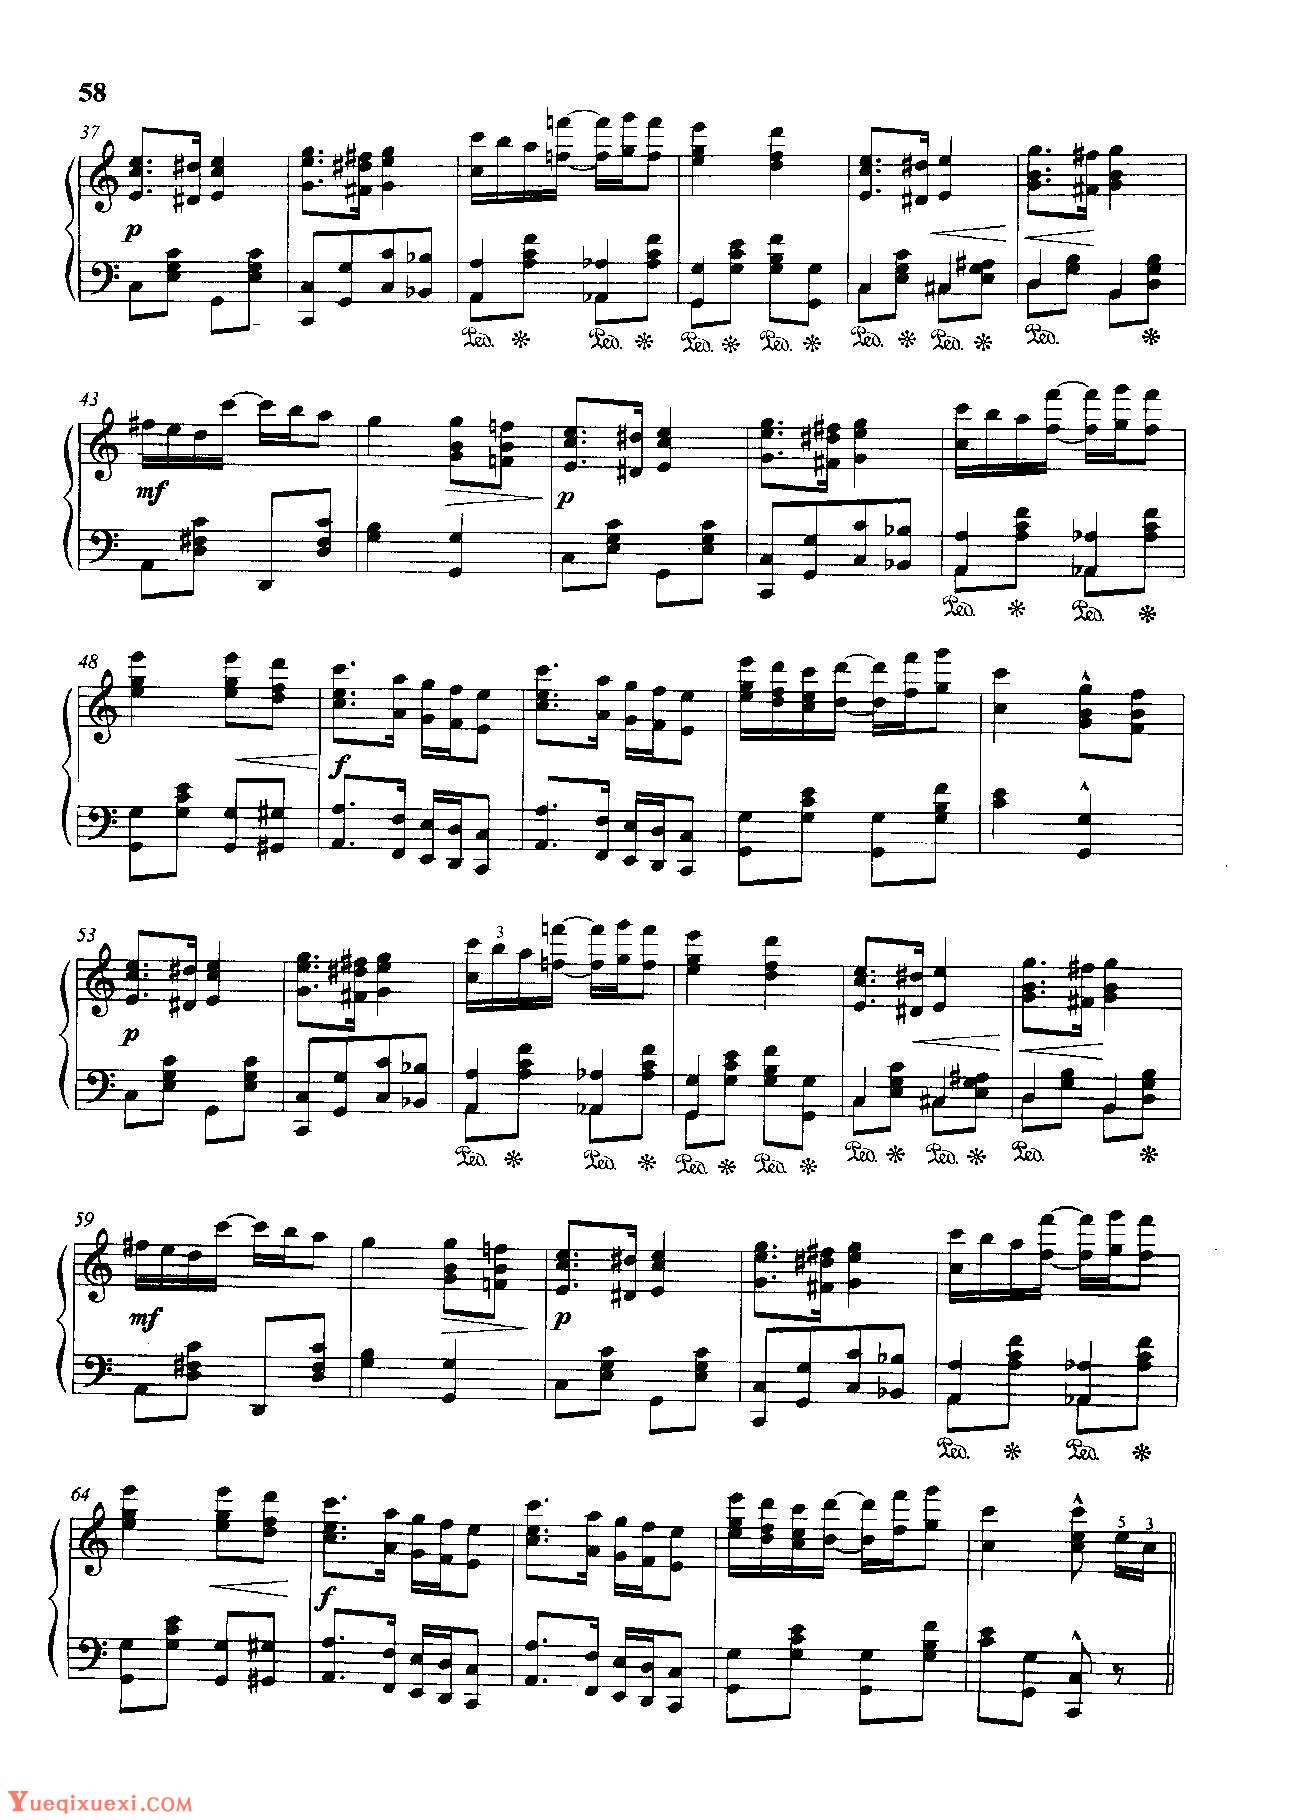 雷格泰姆钢琴乐谱《大枫树》雷格泰姆之王斯科特·乔普林